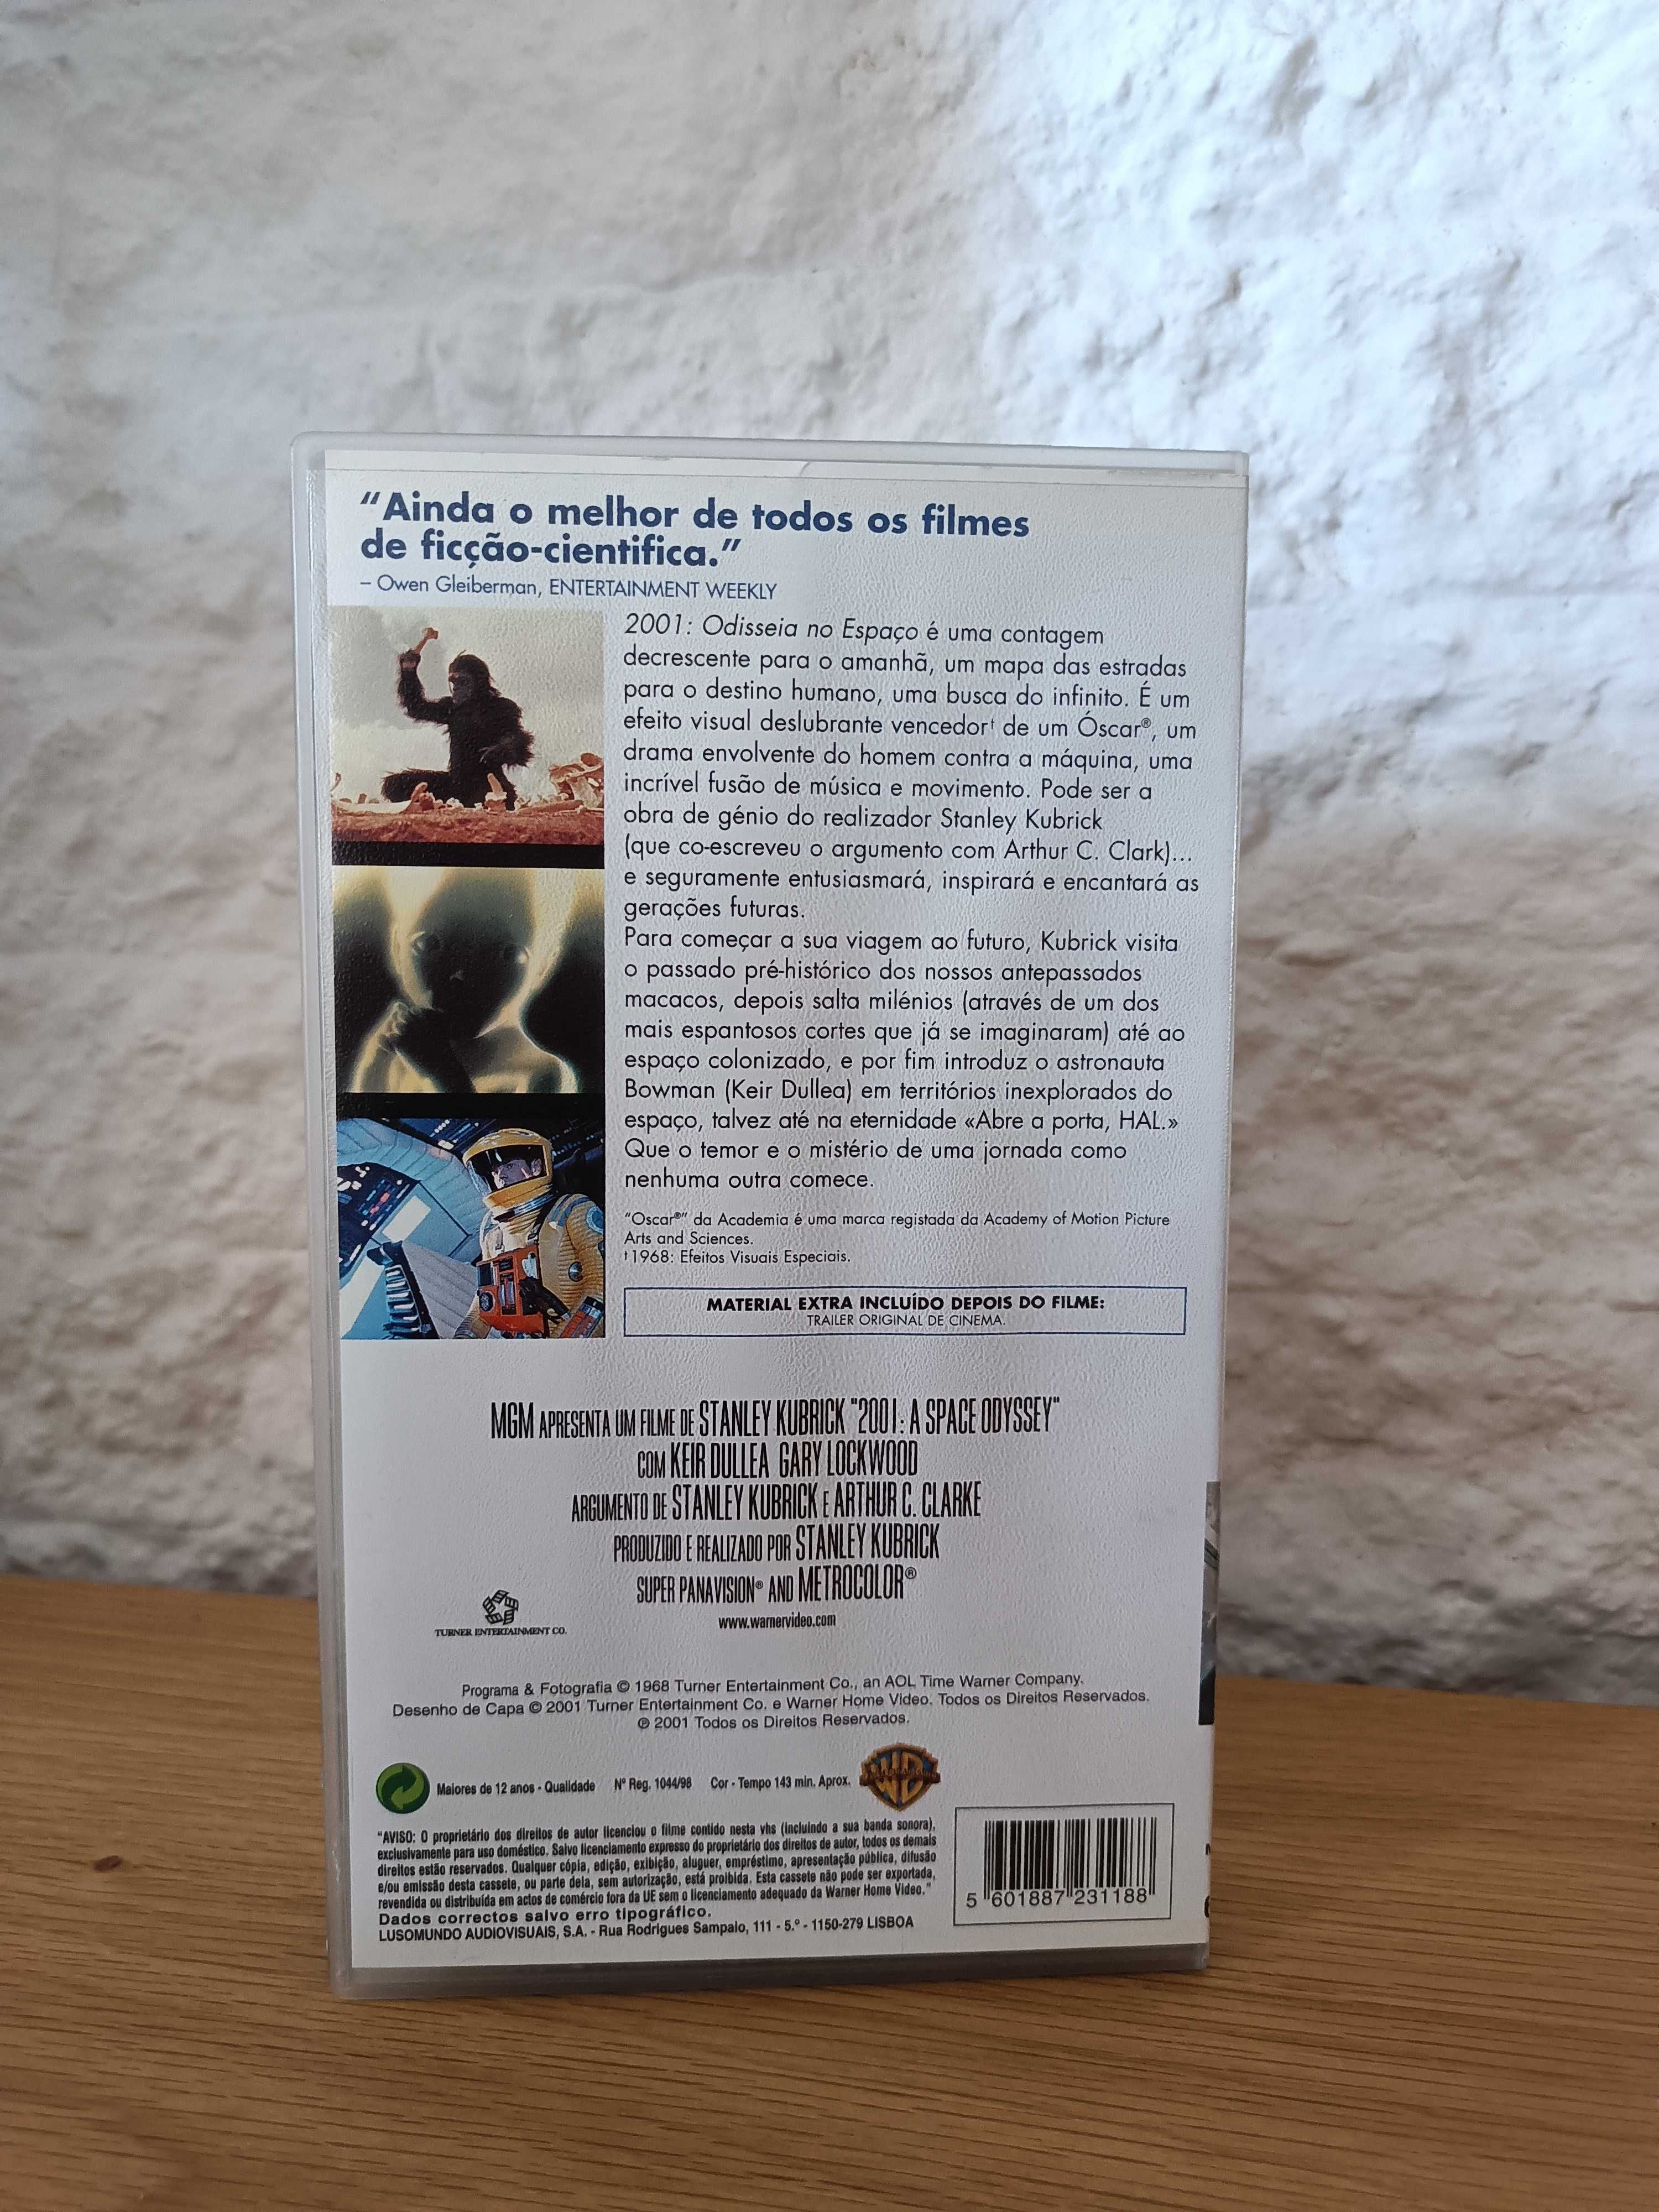 Filme VHS 2001: Odisseia no Espaço Stanley Kubrick